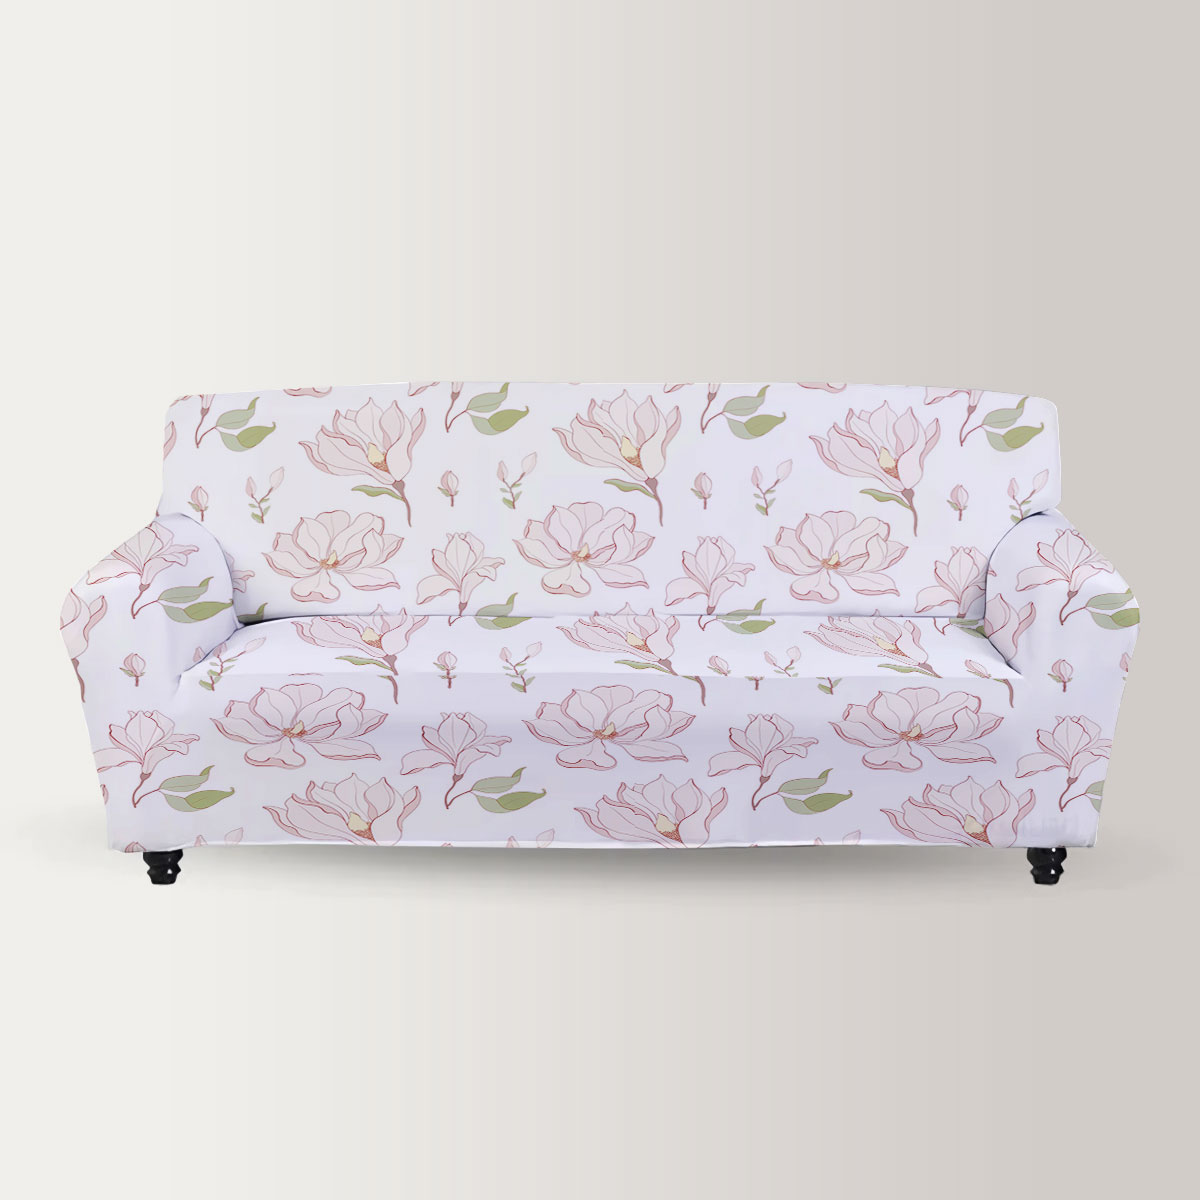 White Magnolia Blossom Sofa Cover